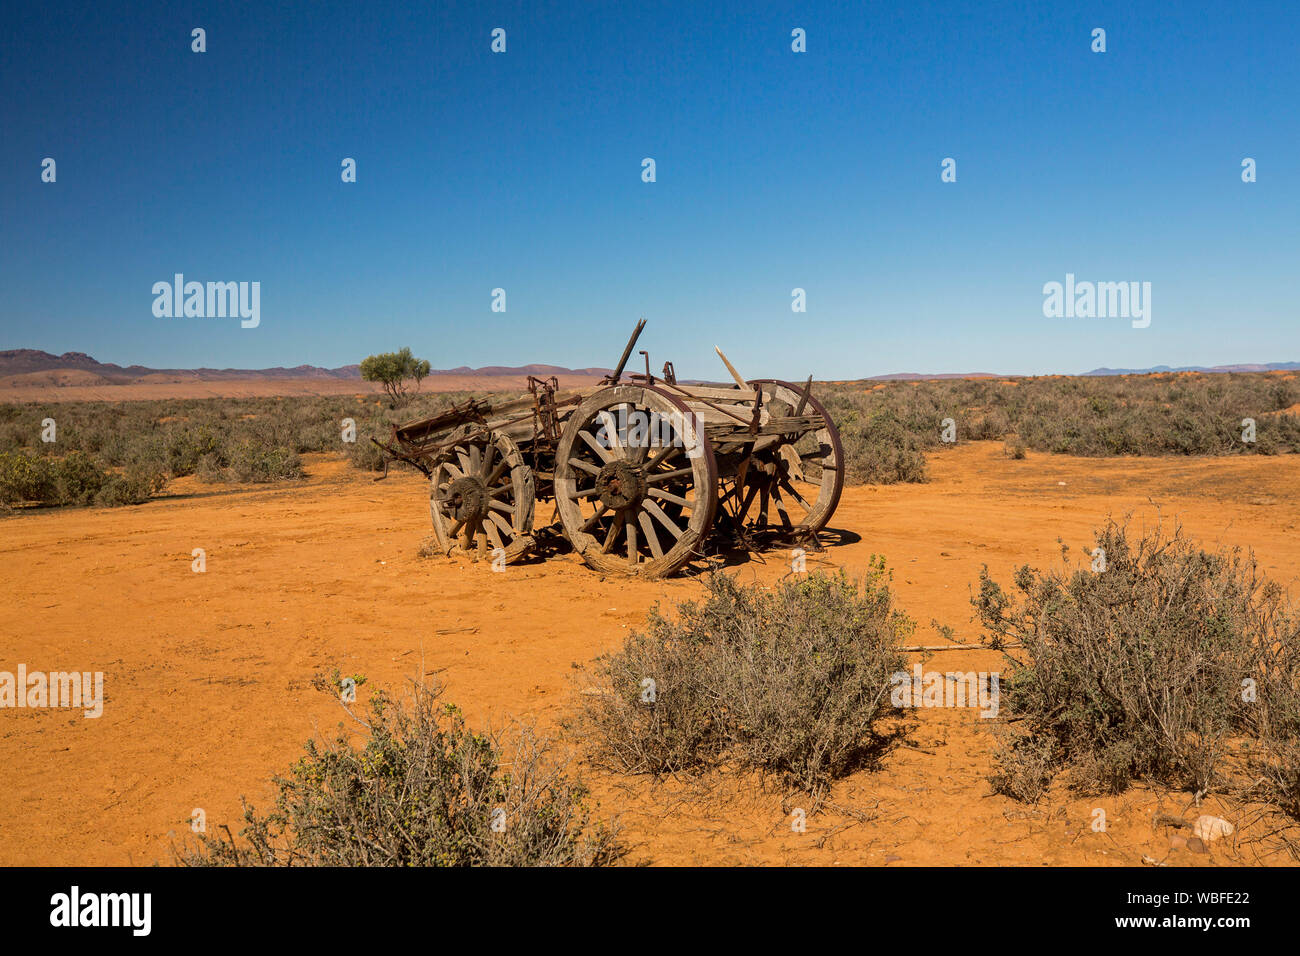 Granja de caballos viejo vagón abandonado en remoto y árido paisaje outback con suelo rojo y vegetación baja en llanuras bajo un cielo azul, en el sur de Australia Foto de stock